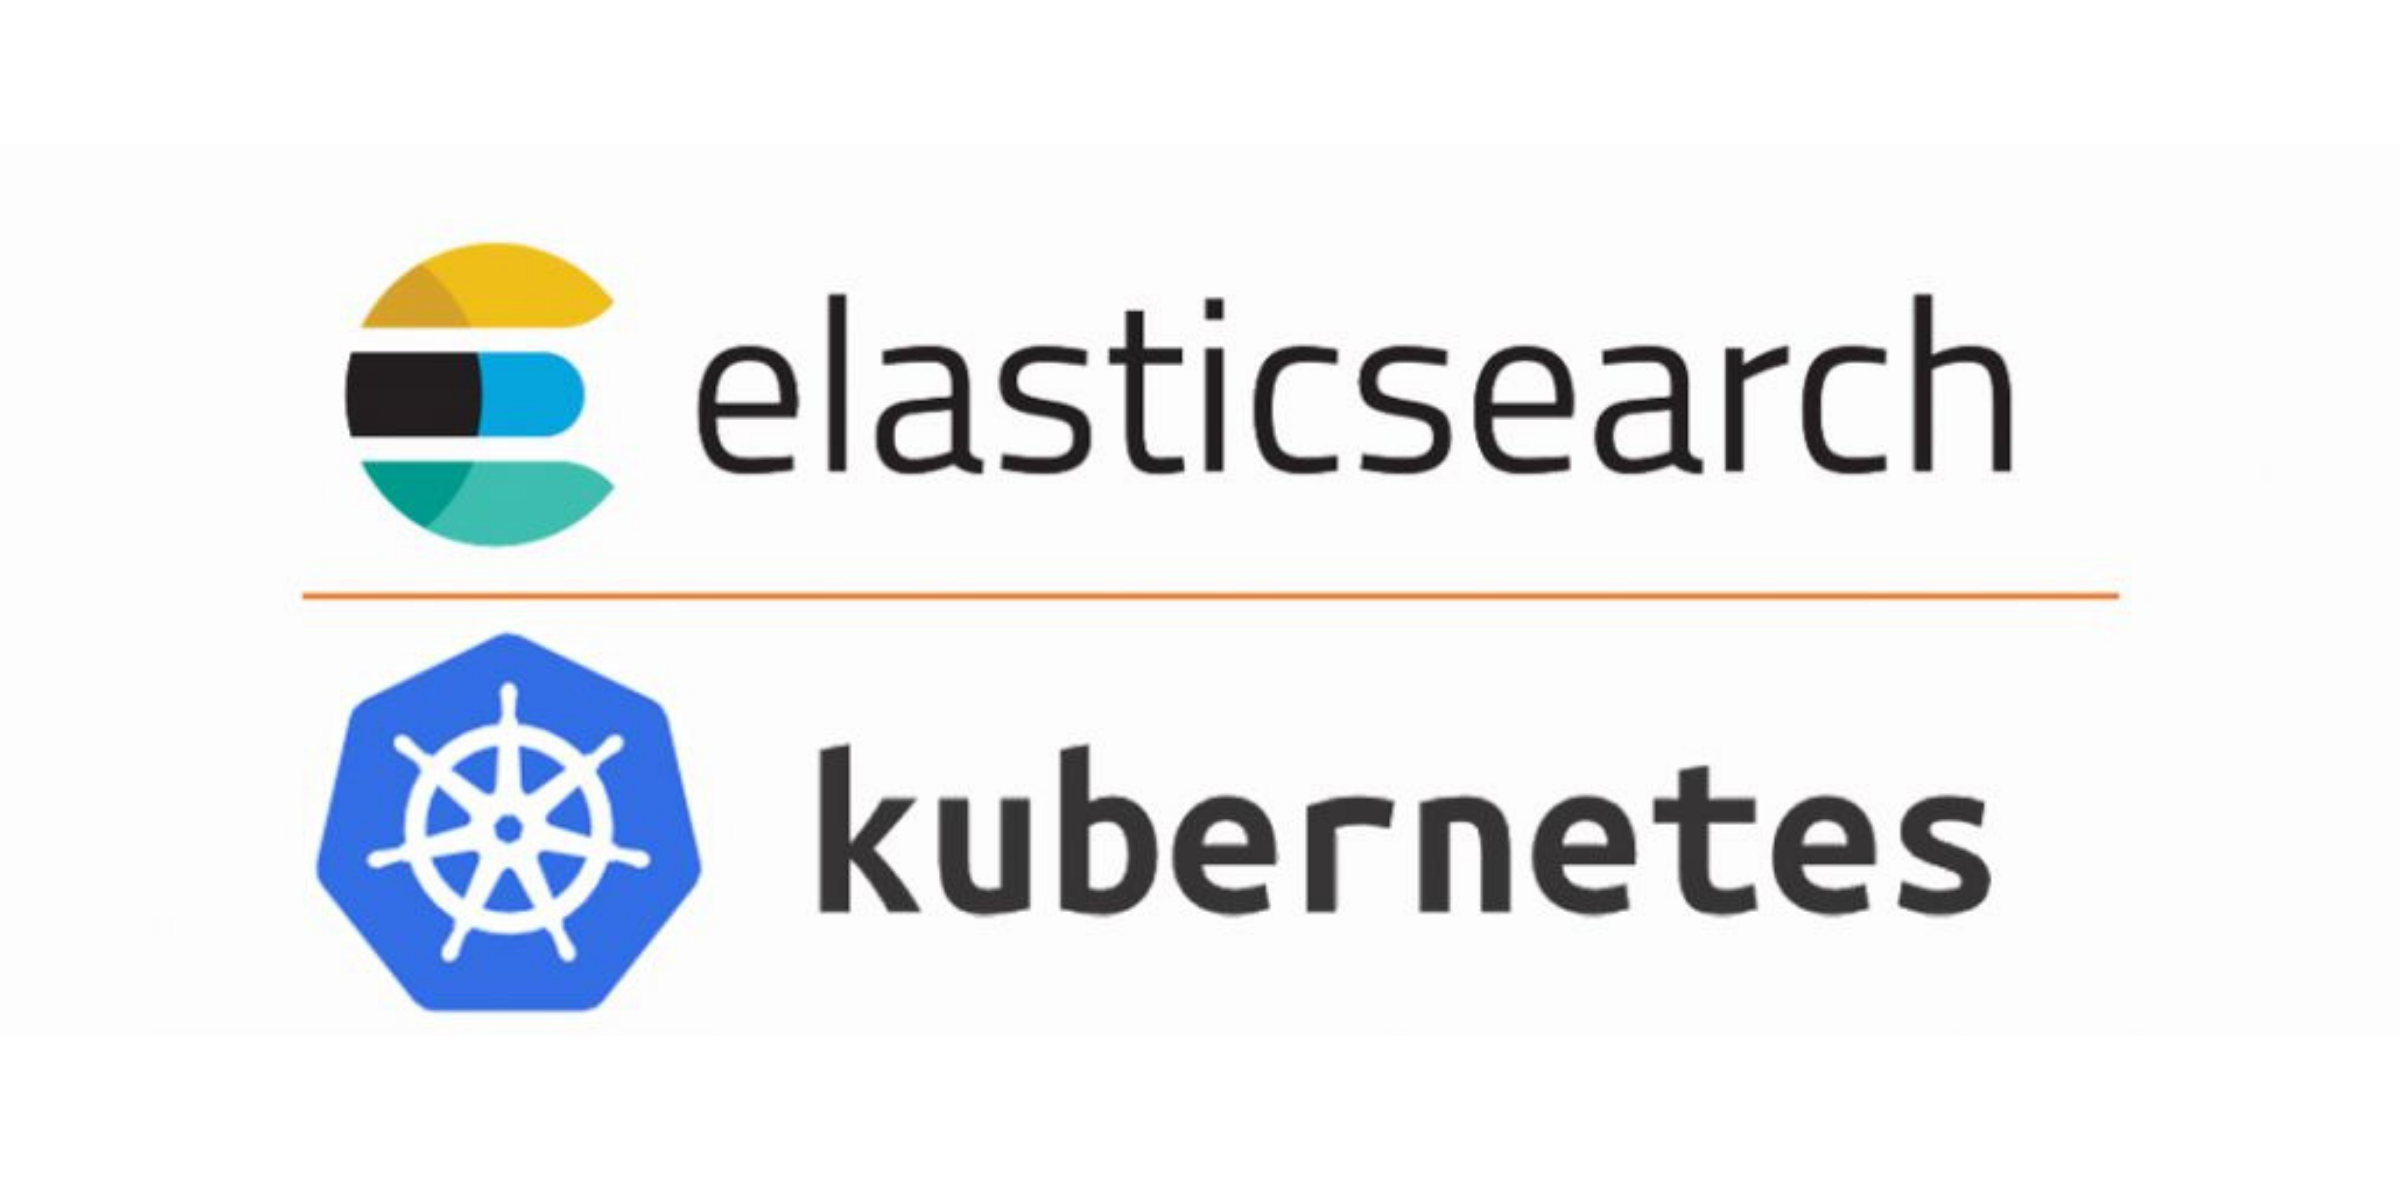 ElasticSearch and Kubernetes